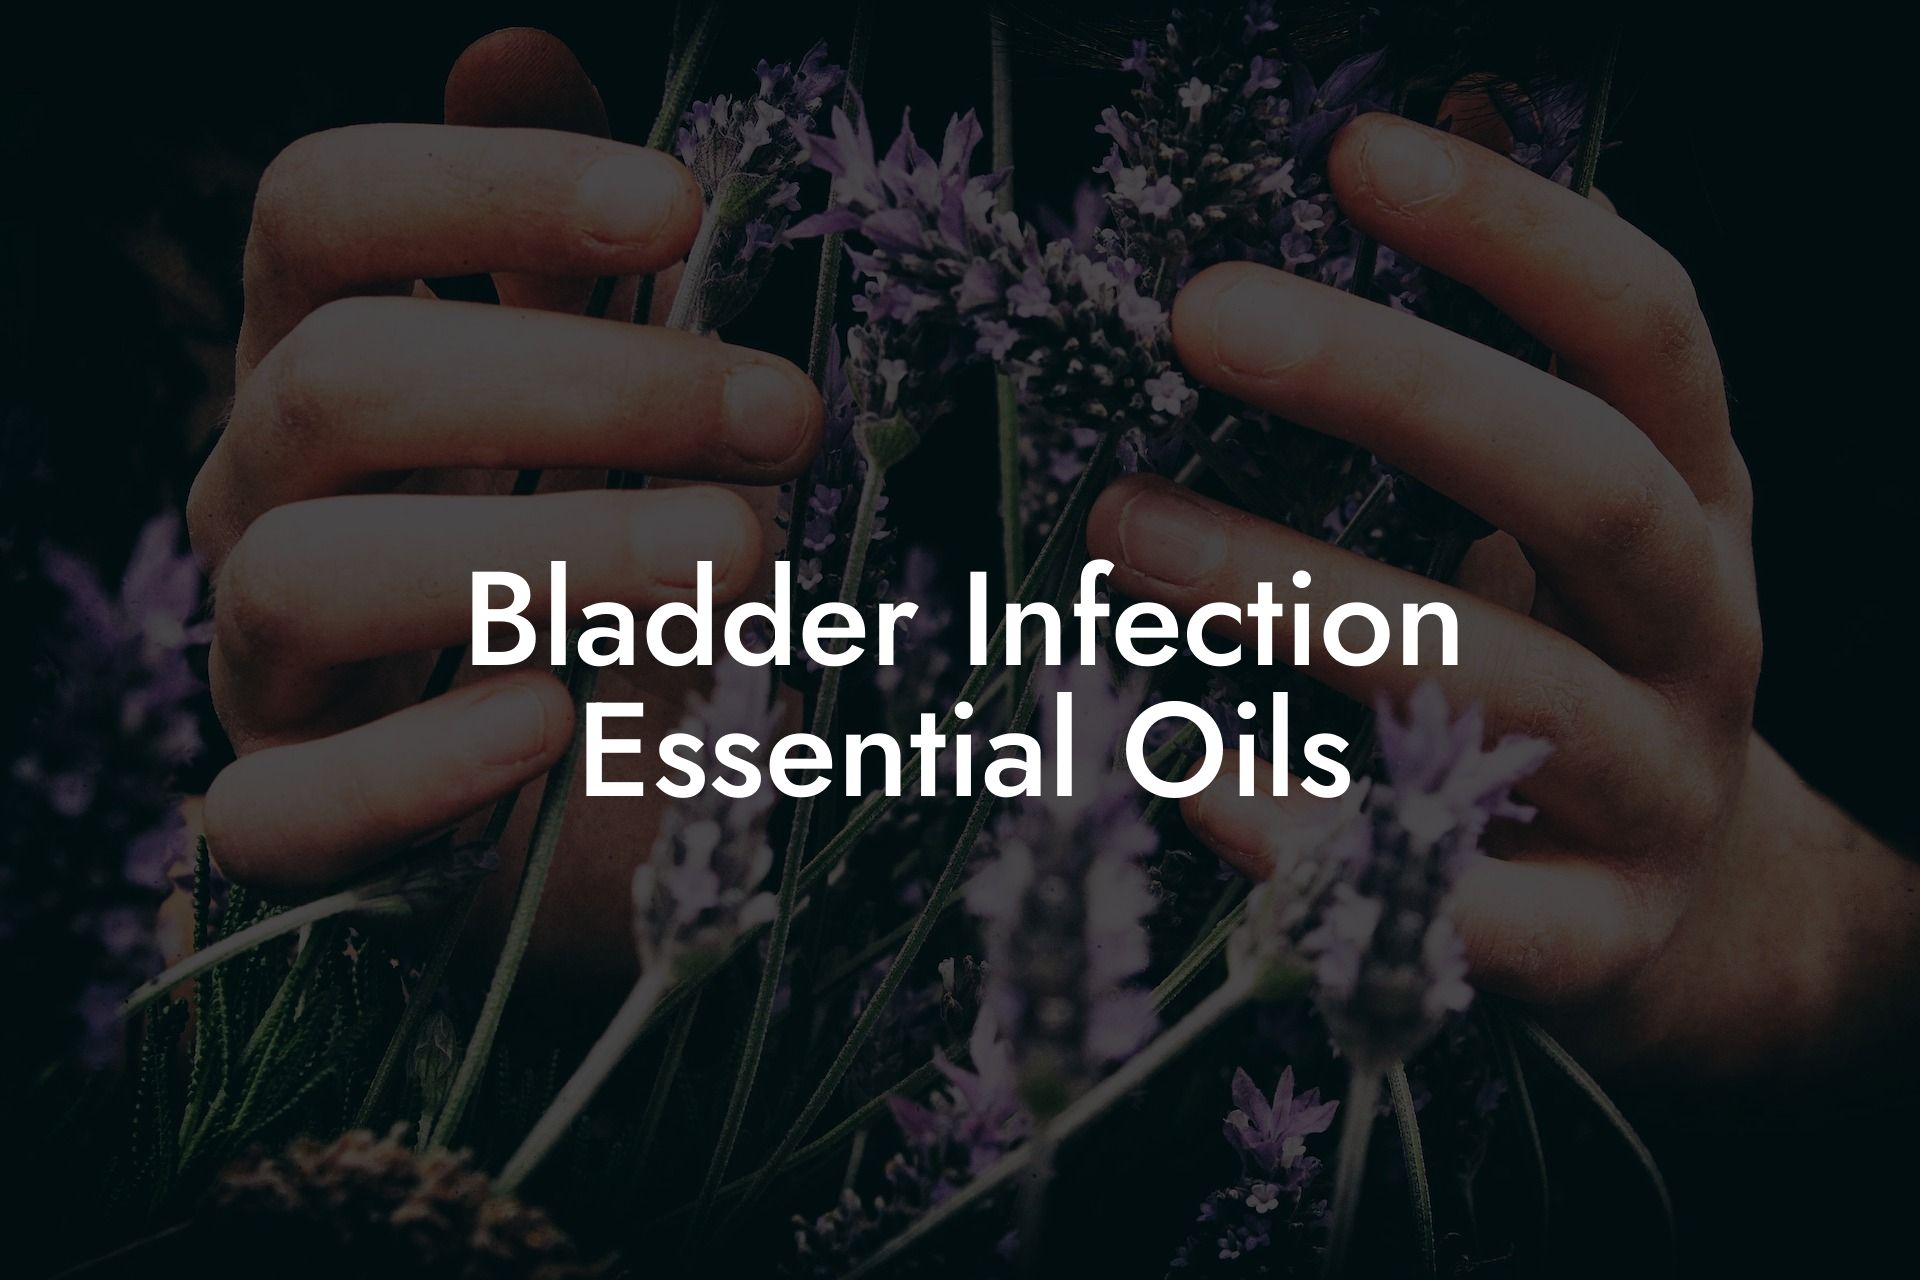 Bladder Infection Essential Oils